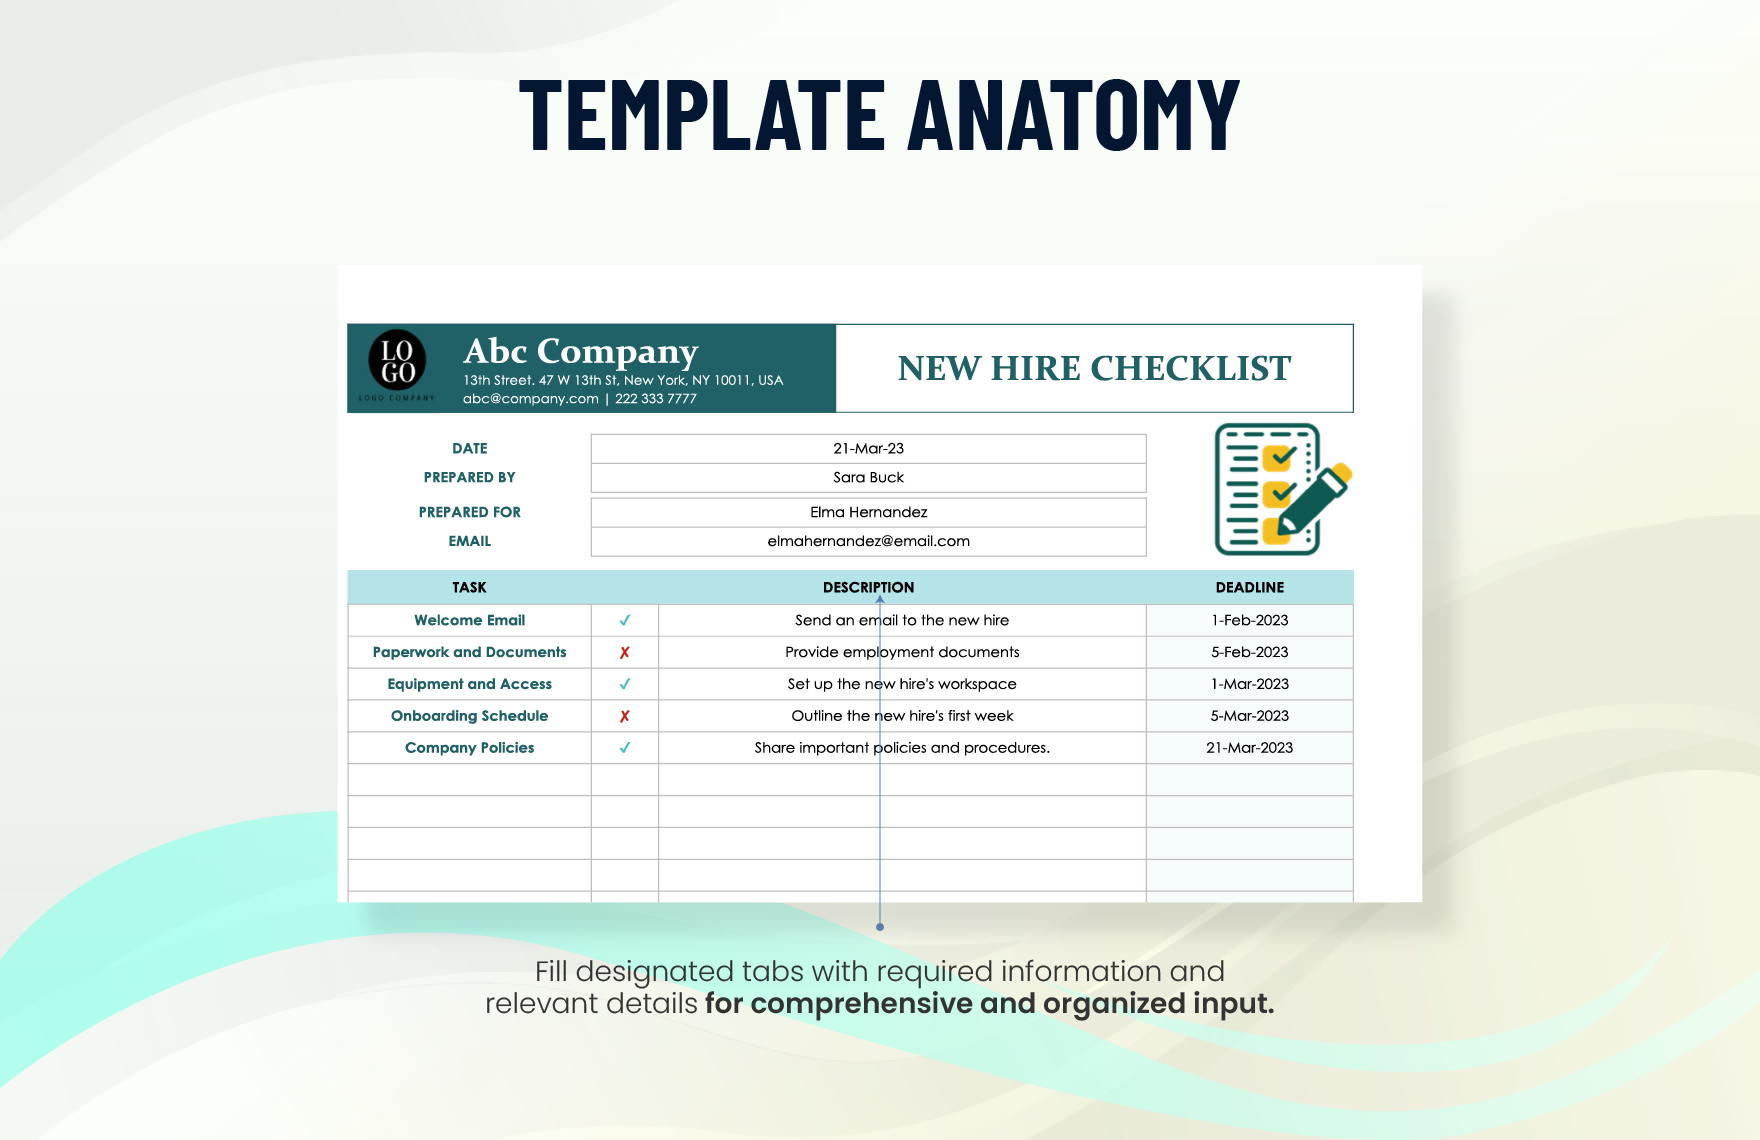 New Hire Checklist Template